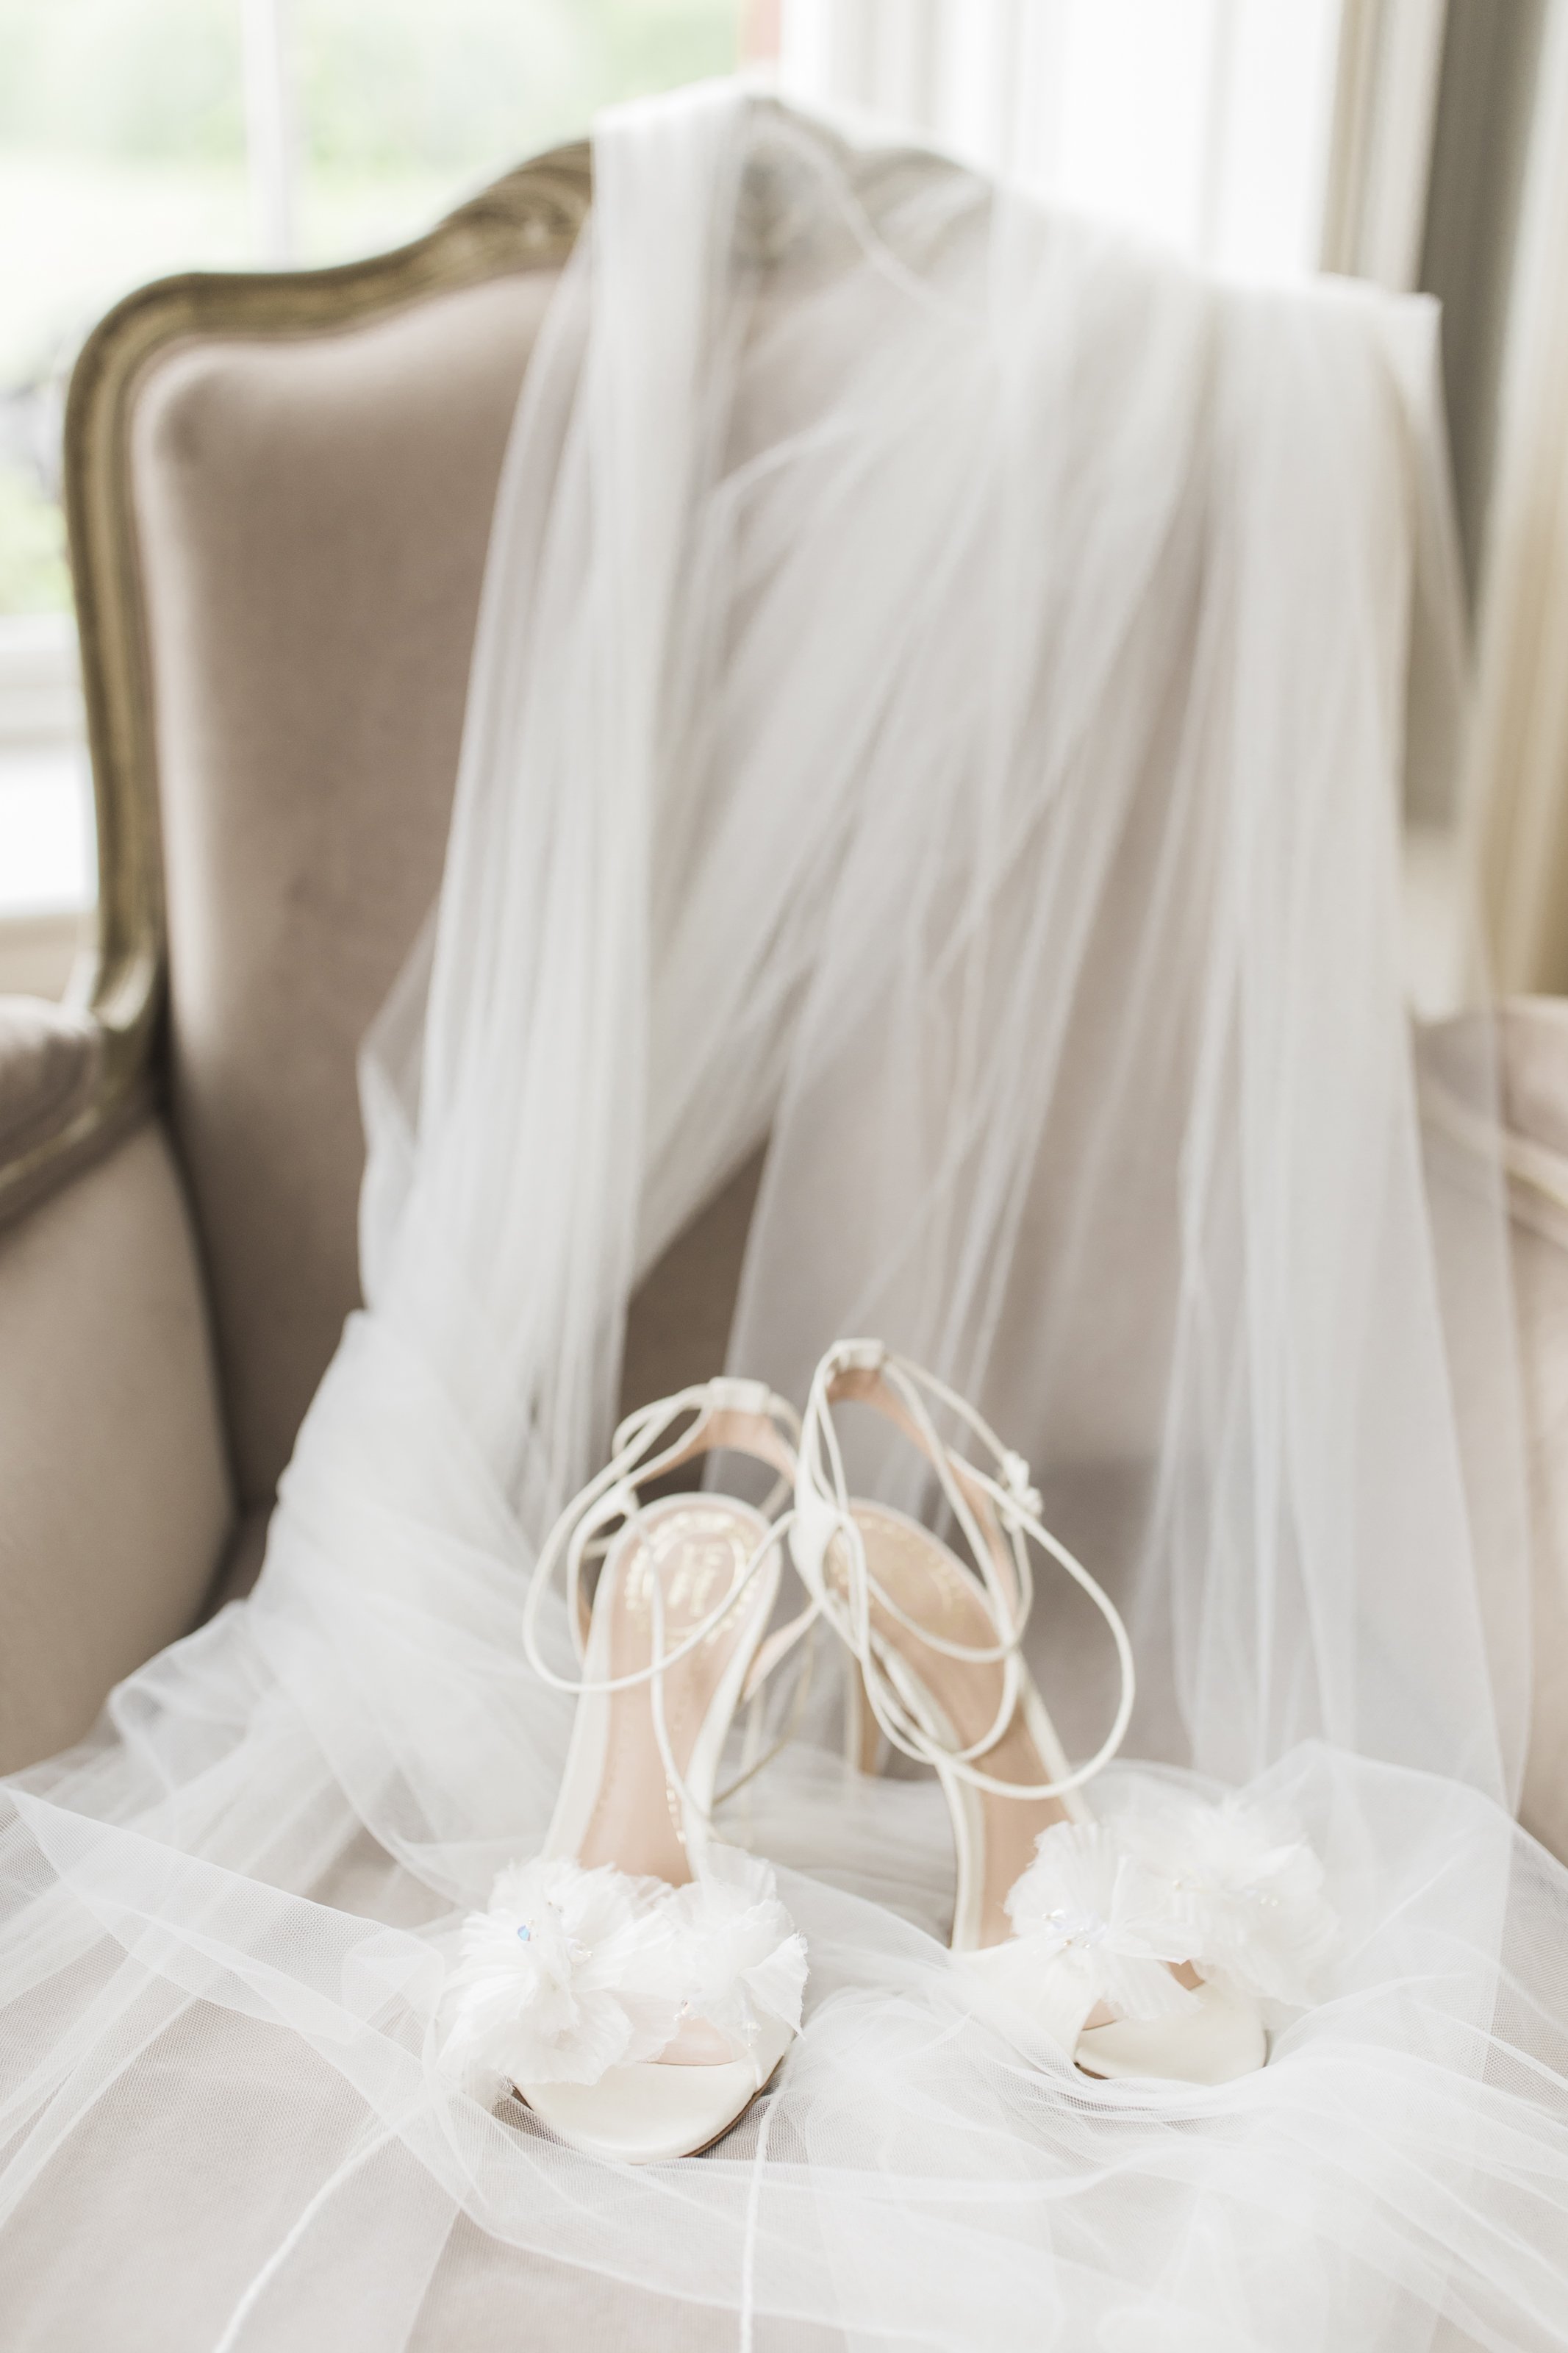  Jenny Packham wedding shoes 